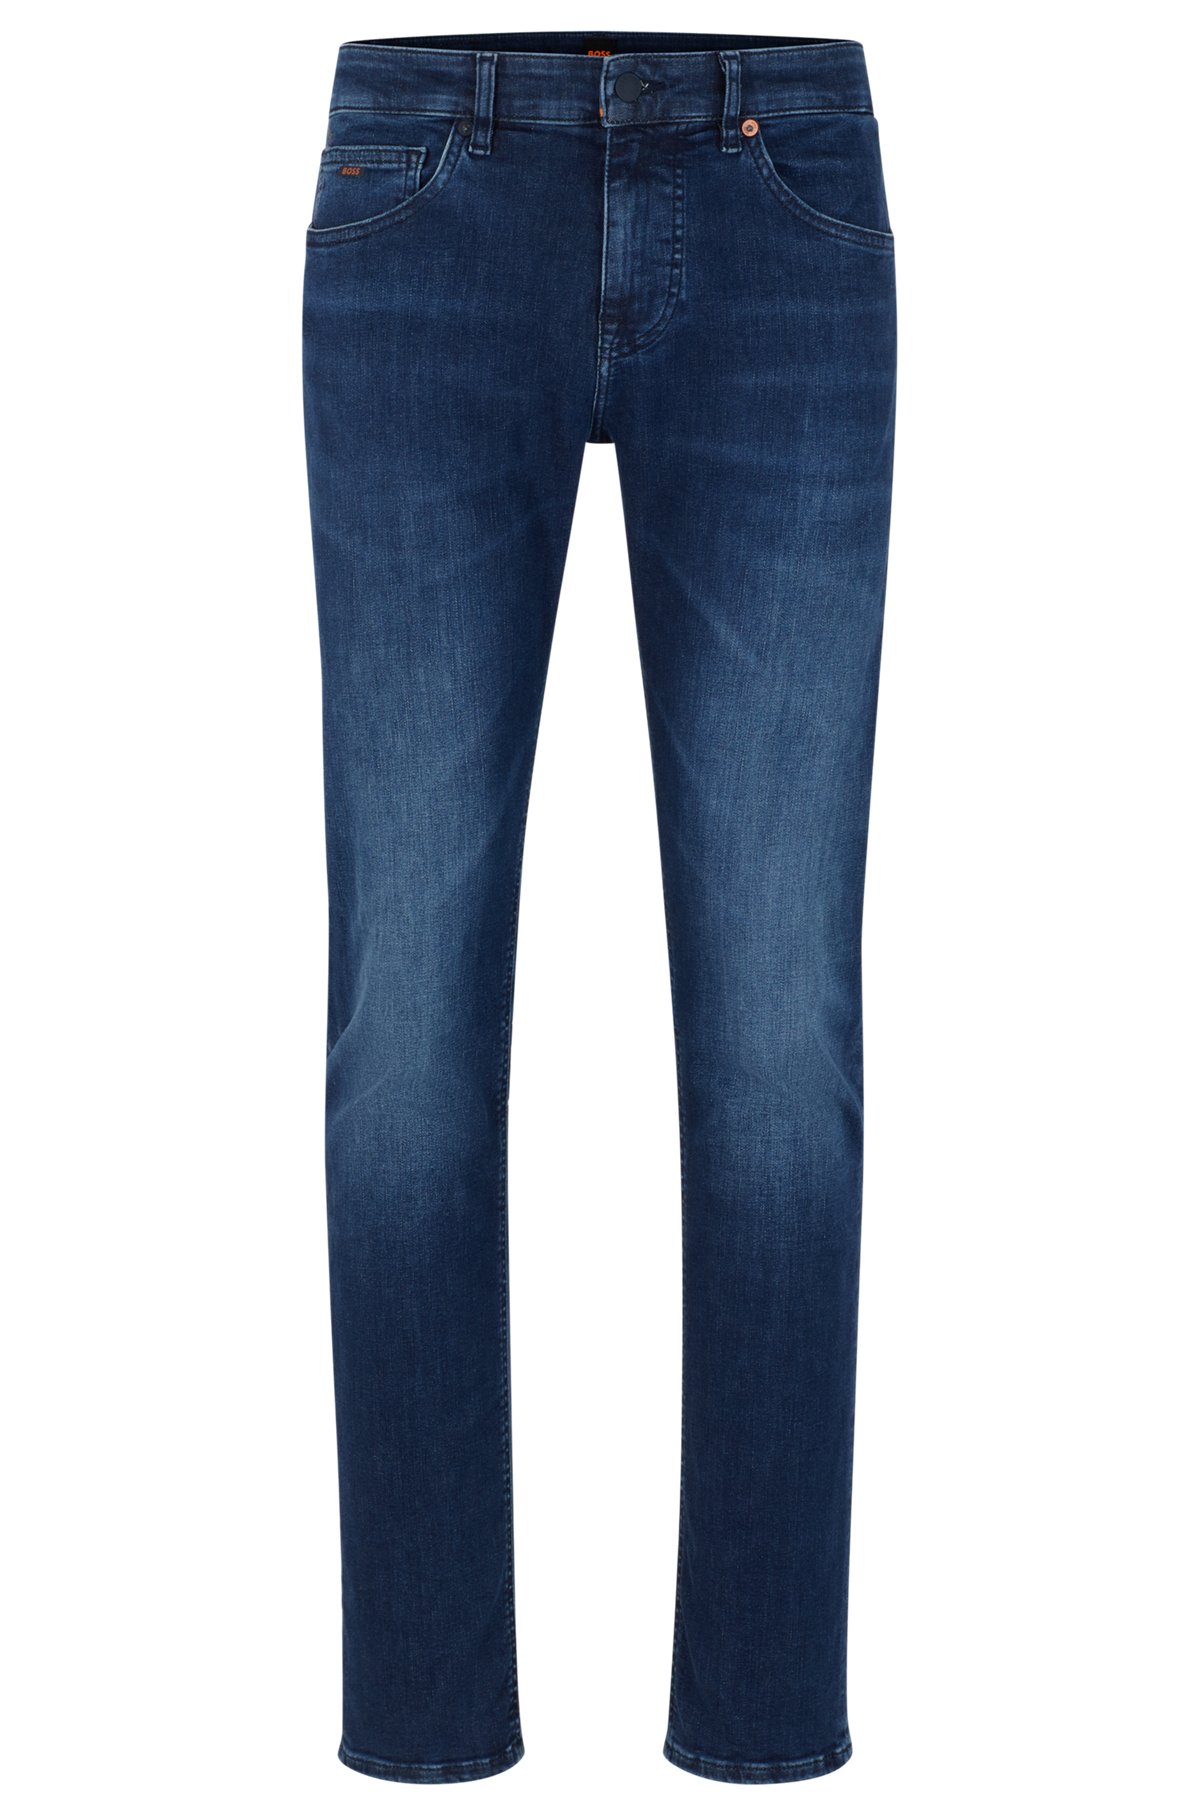 Disturbio Pertenecer a Tierras altas BOSS - Slim-fit jeans in dark-blue supreme-movement denim